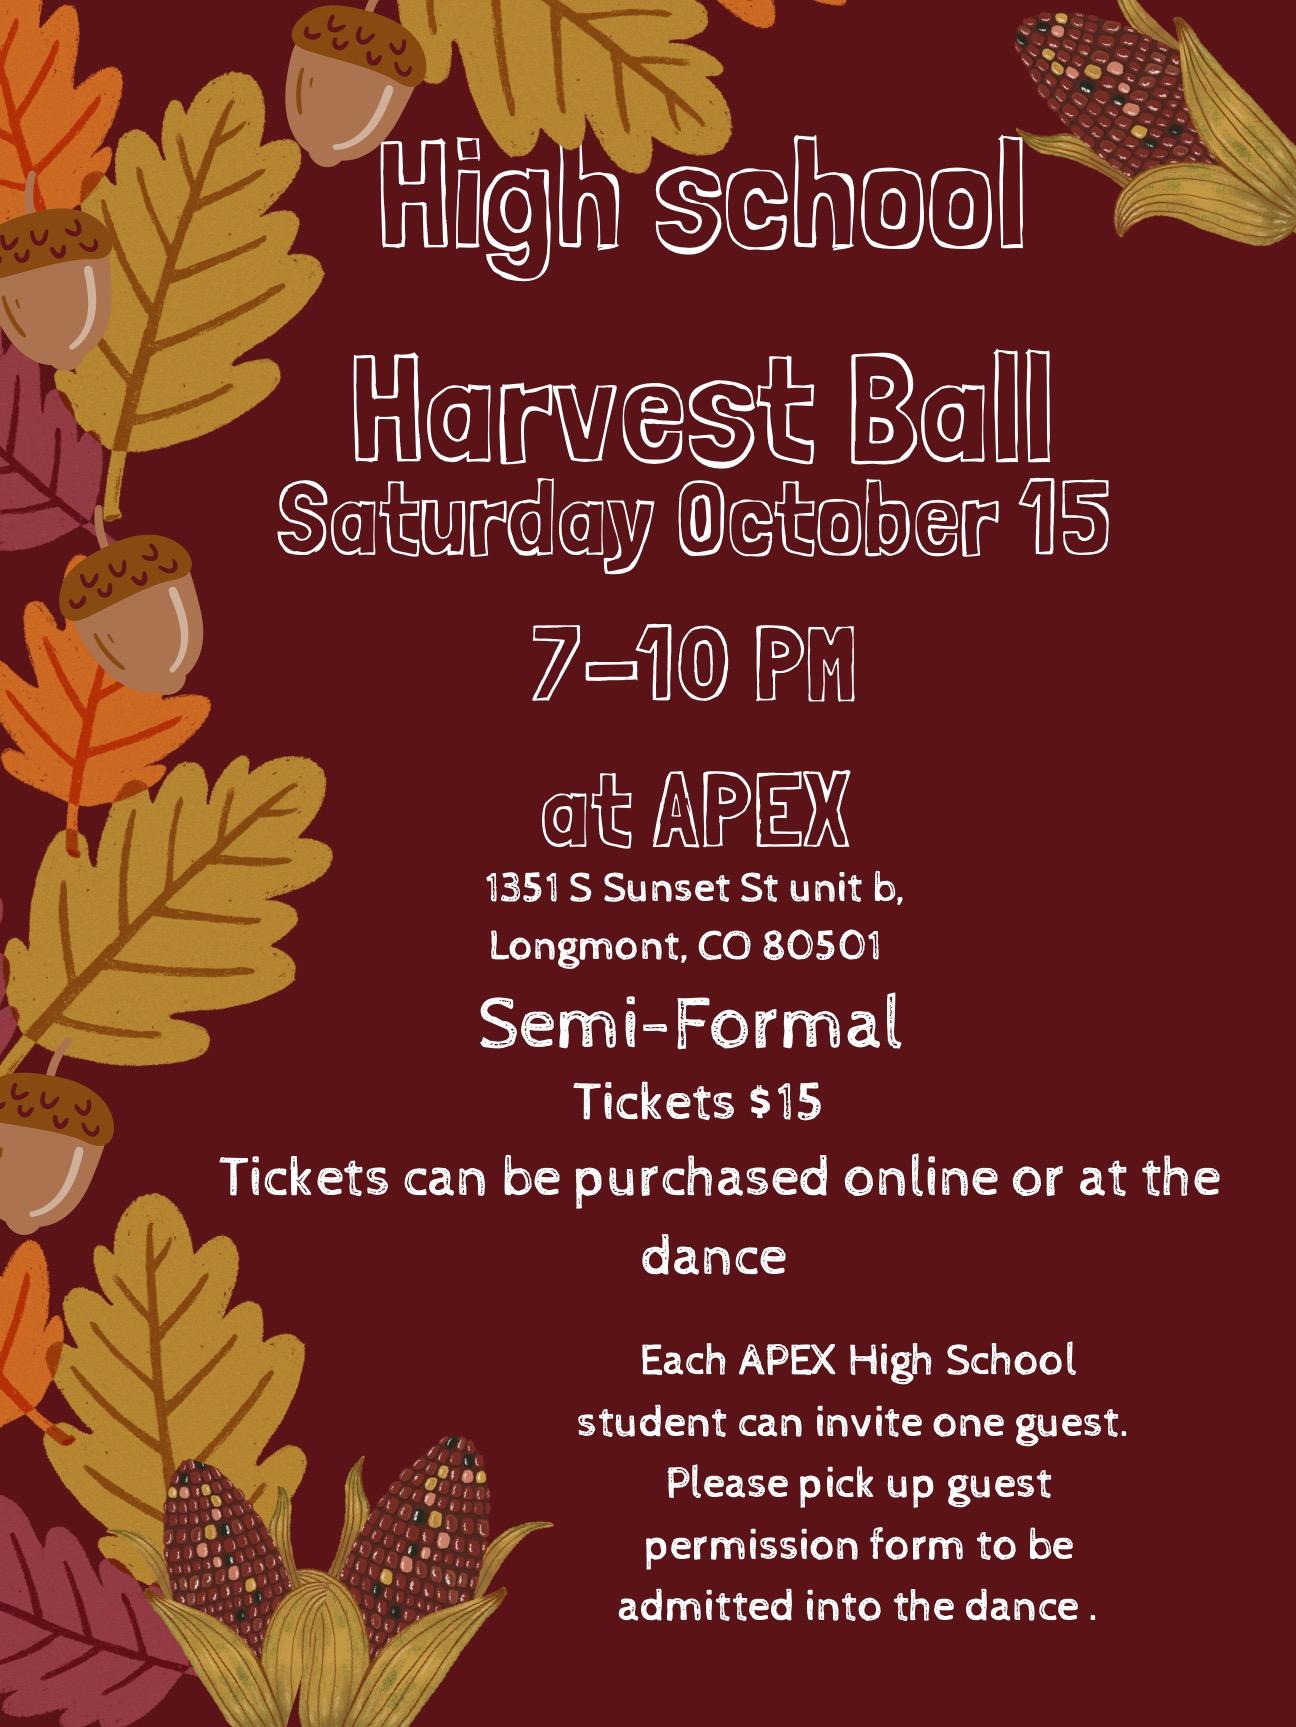 Harvest Ball flyer